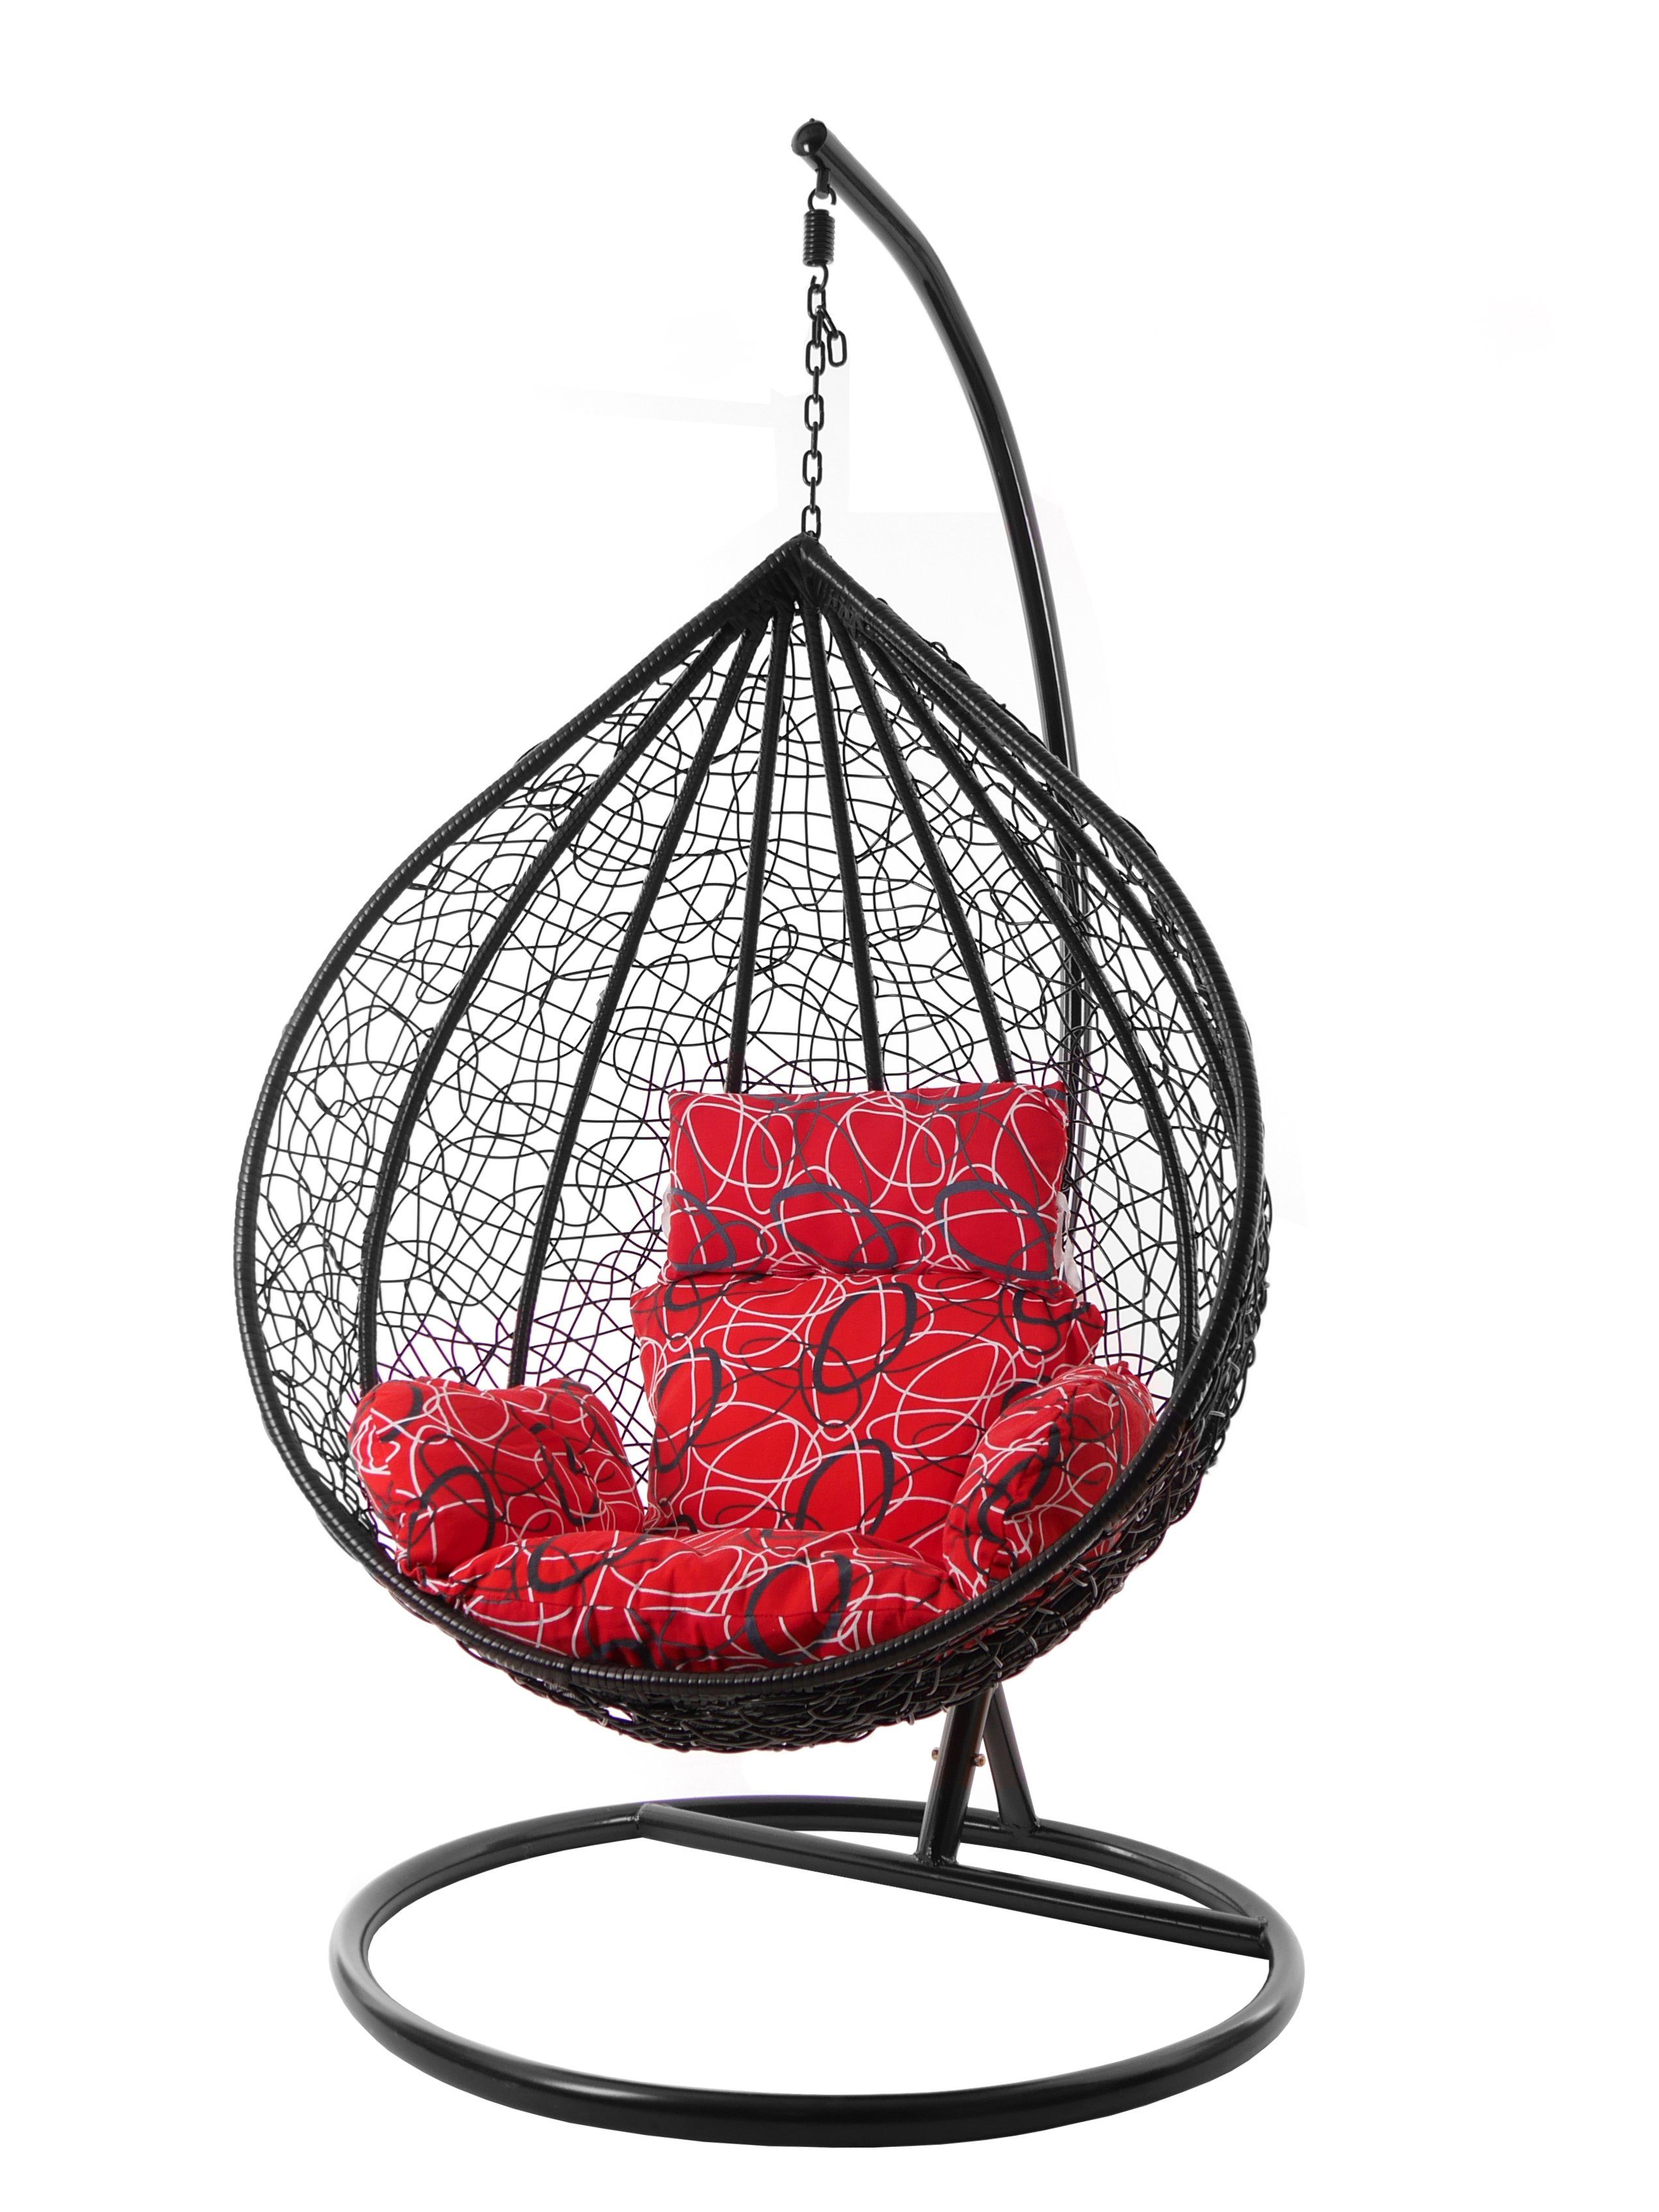 Nest-Kissen (3088 Hängesessel red Gestell KIDEO Kissen, mit Hängesessel und XXL Swing frizzy) Chair, schwarz, MANACOR Hängesessel gemustert rot